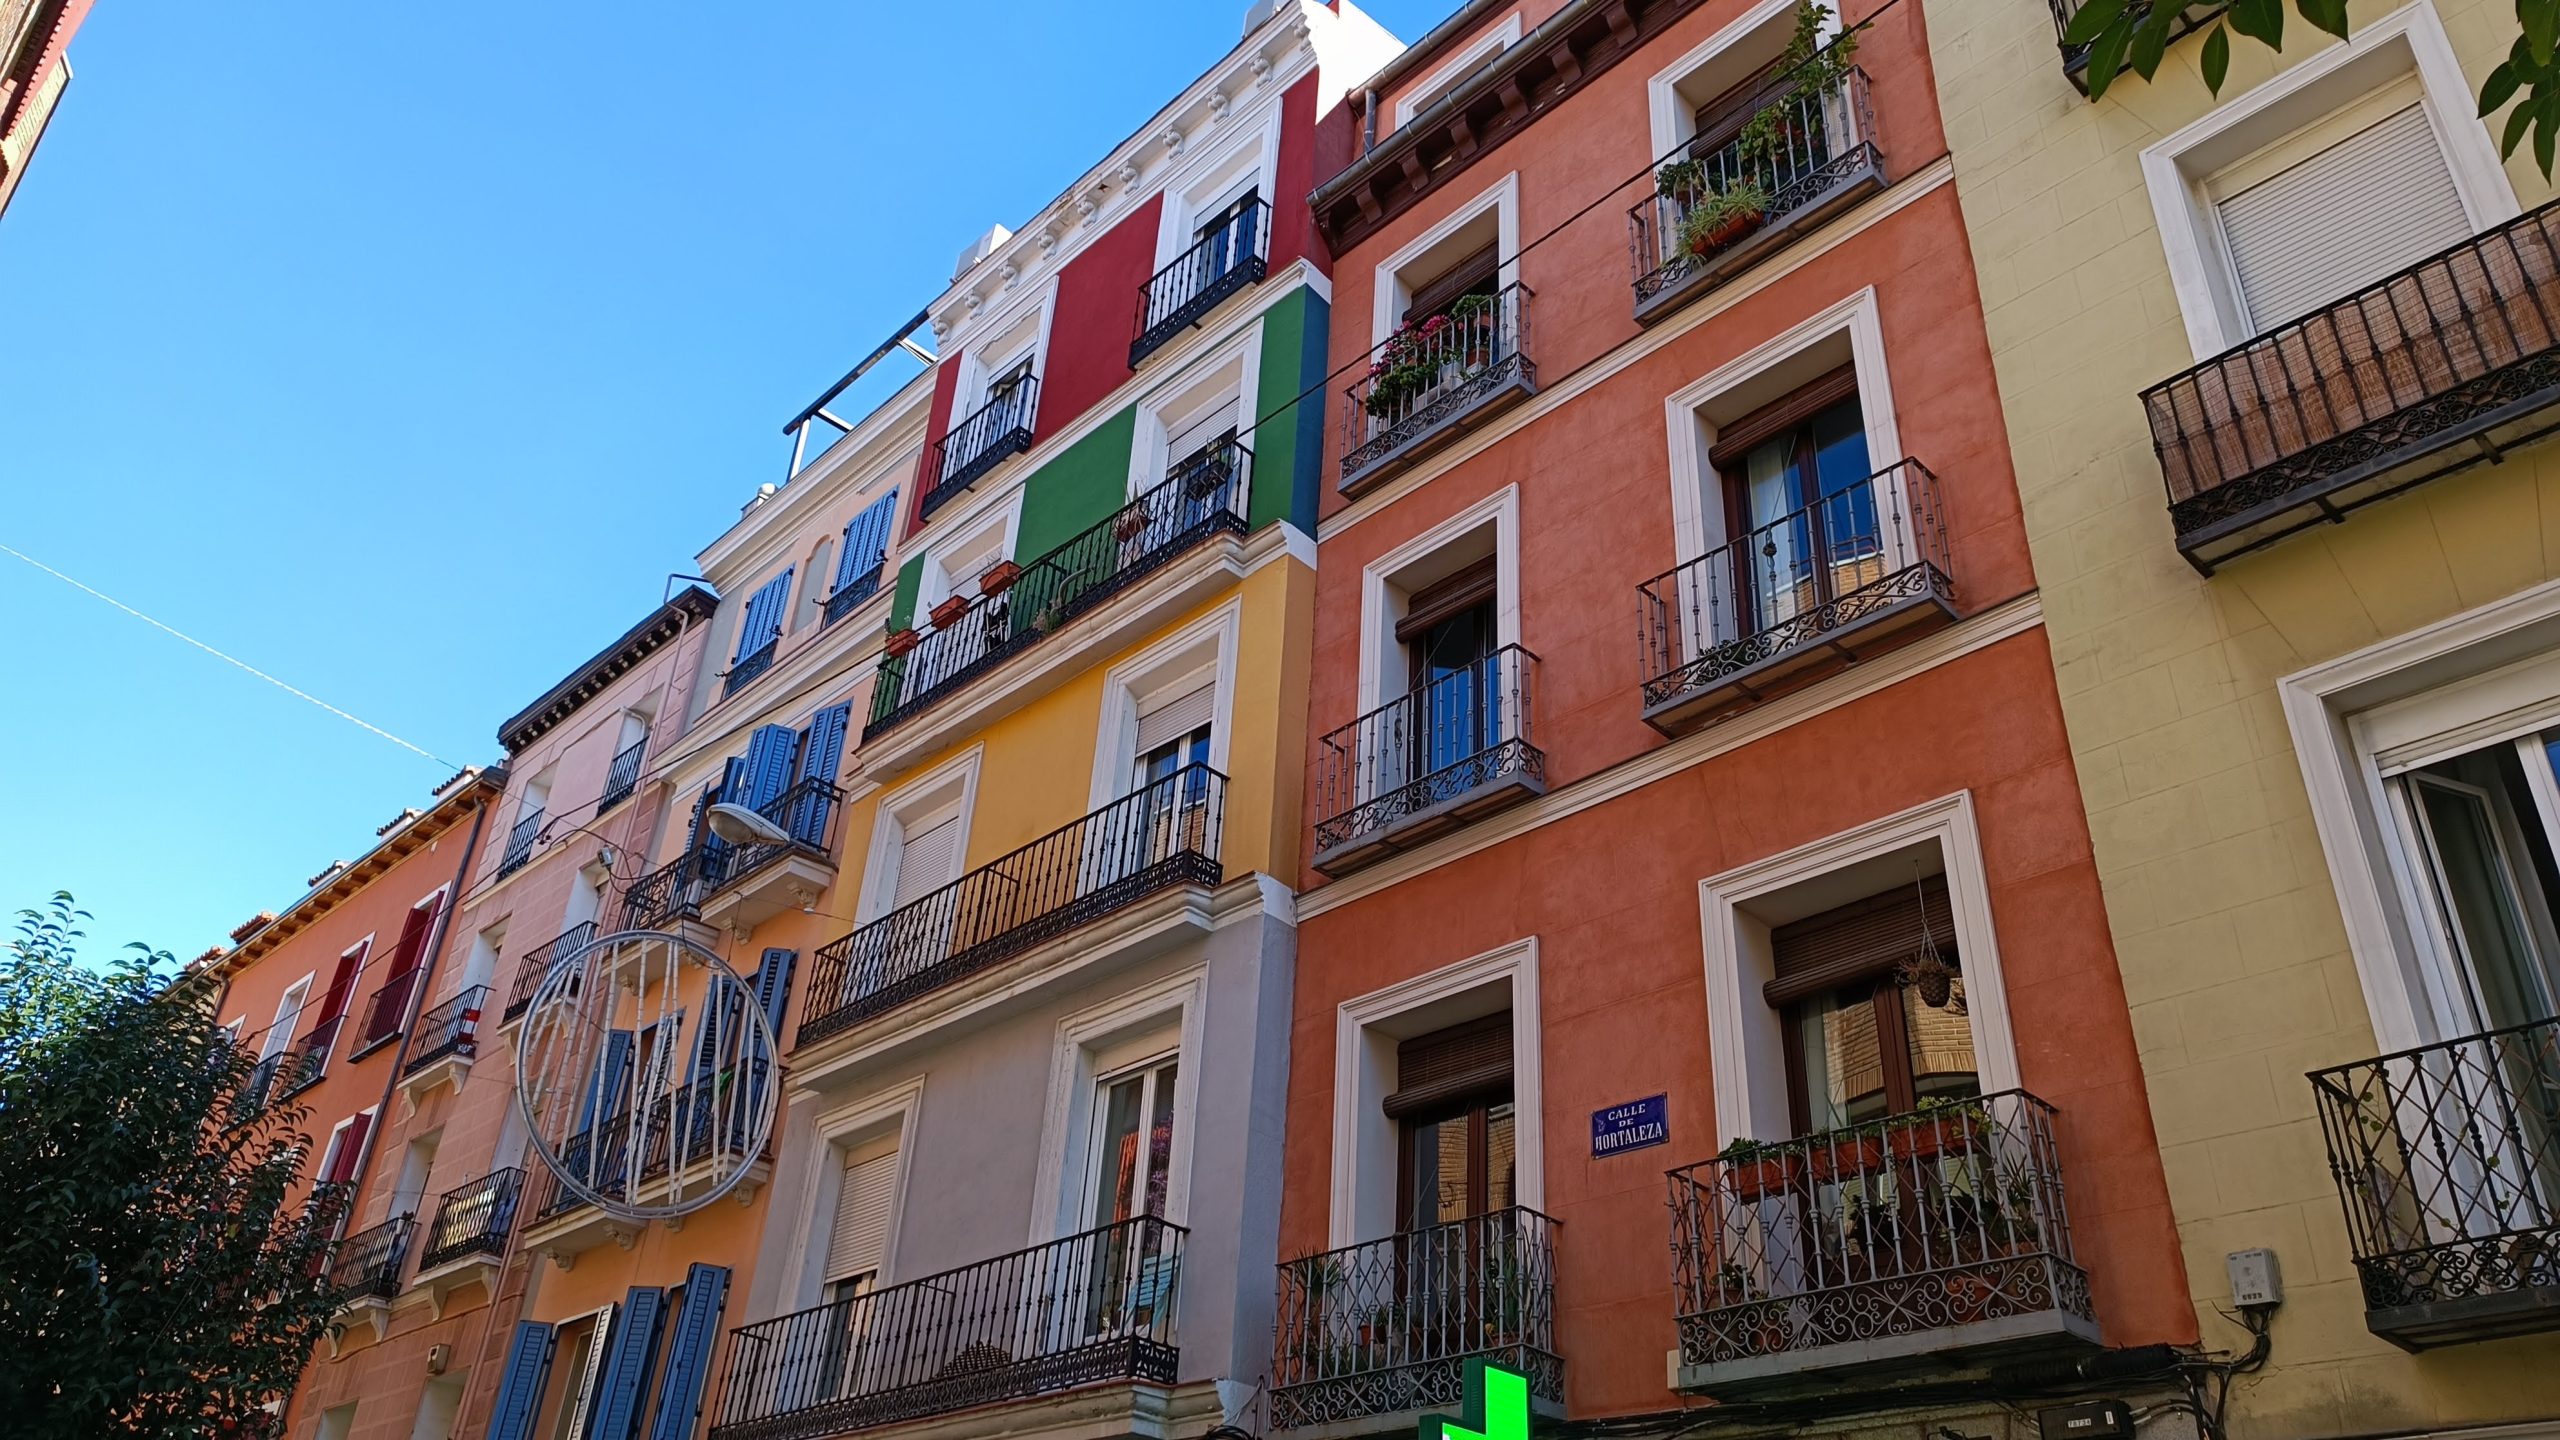 Situado al norte de Gran Vía y al este de Malasaña, Chueca ha sido durante décadas el barrio gay de Madrid.